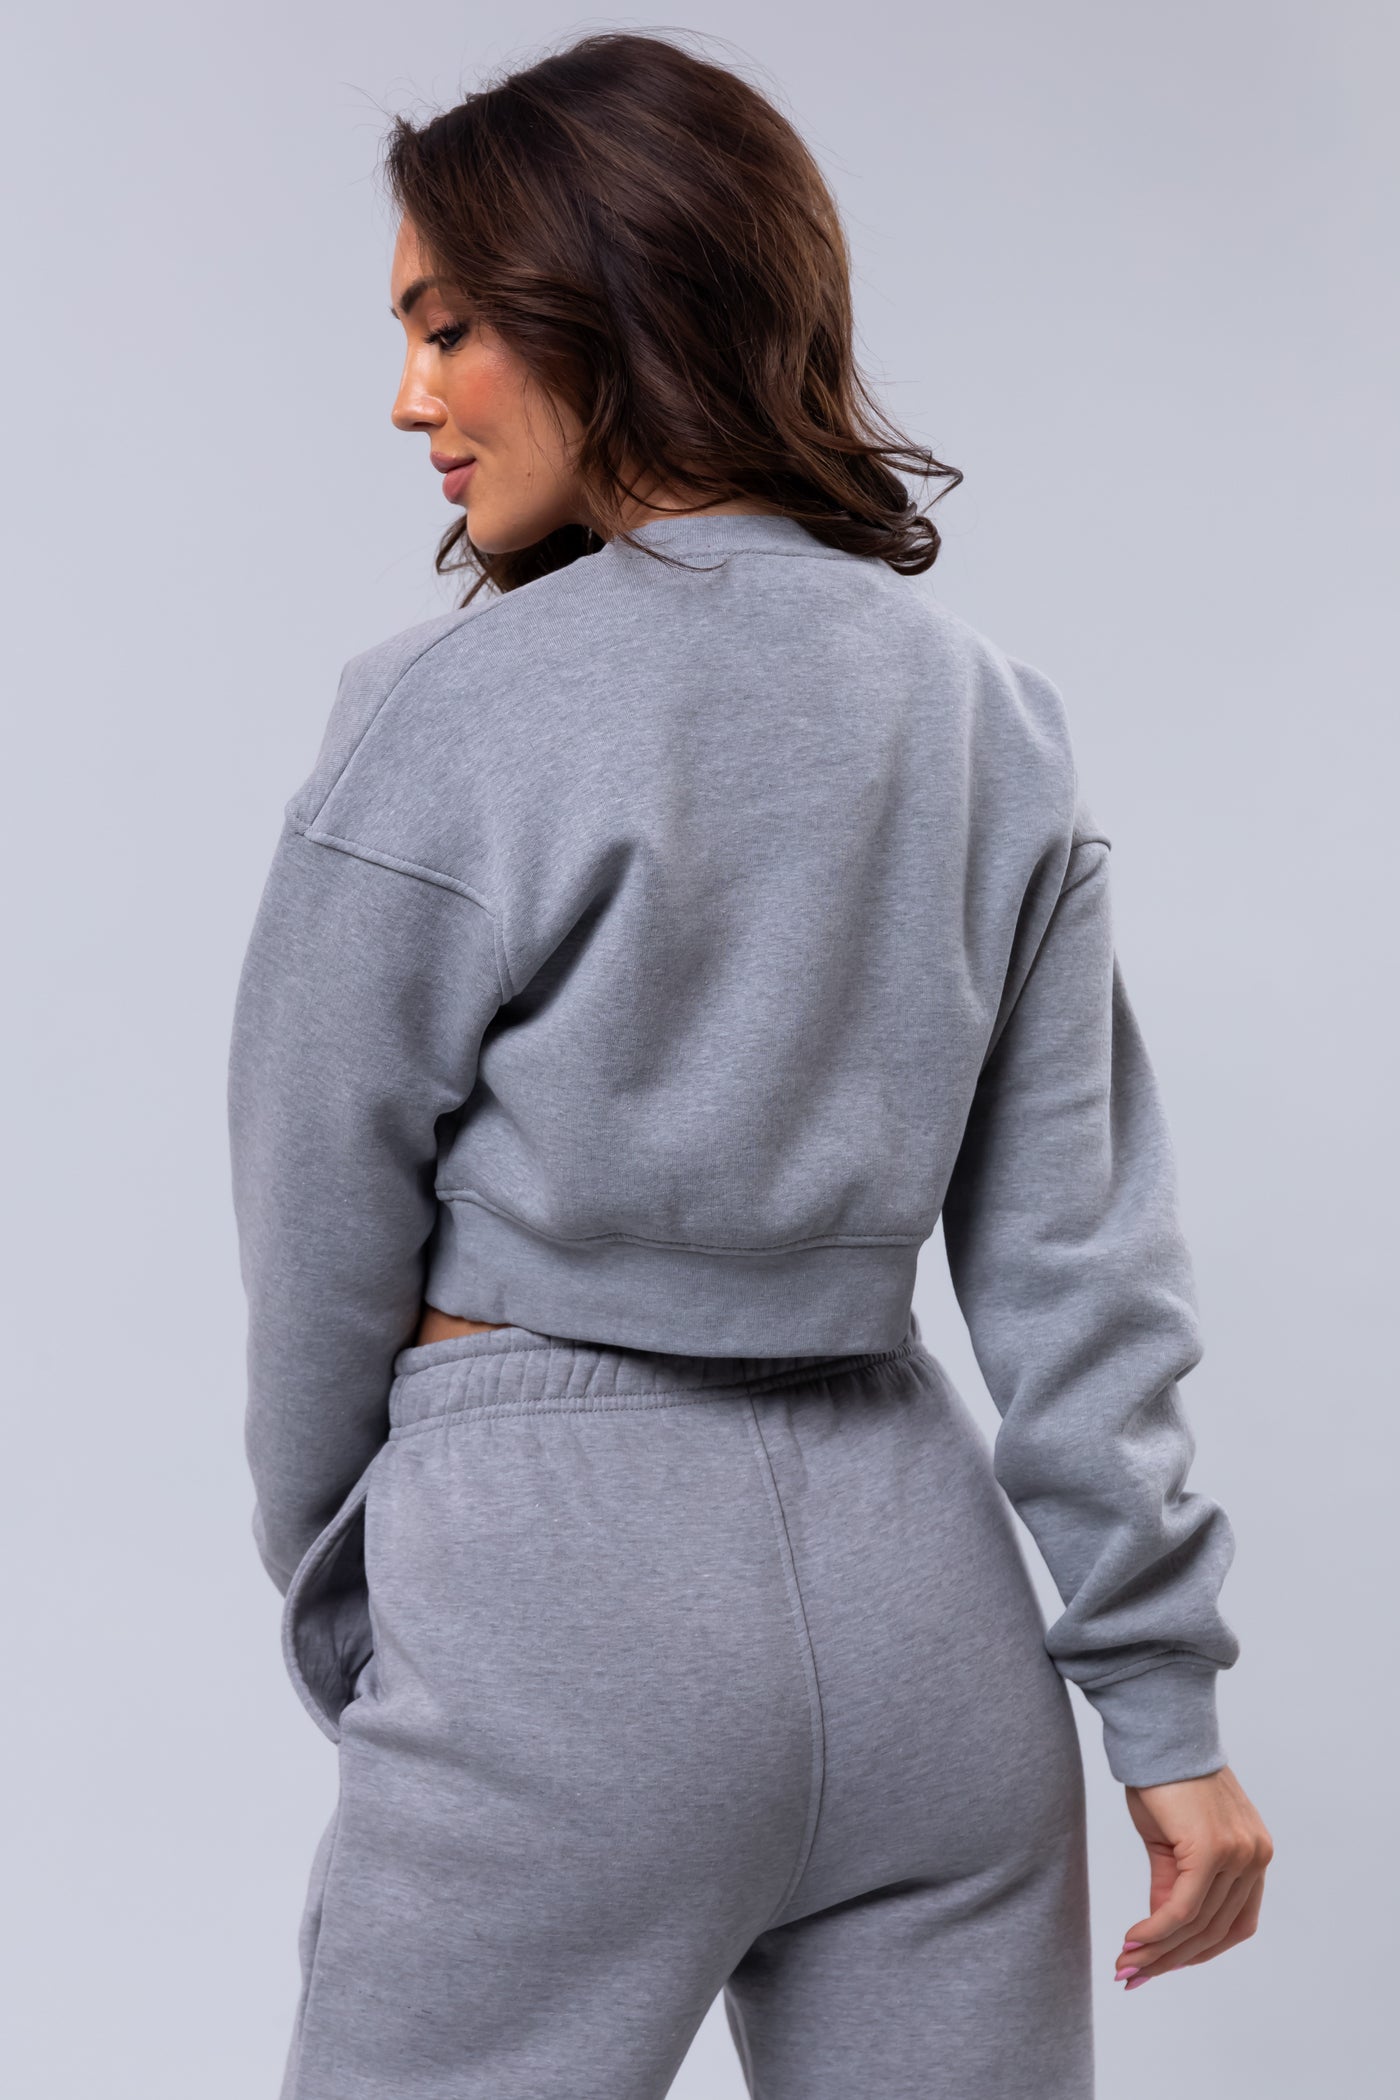 Heather Grey Fleece Cropped Sweatshirt